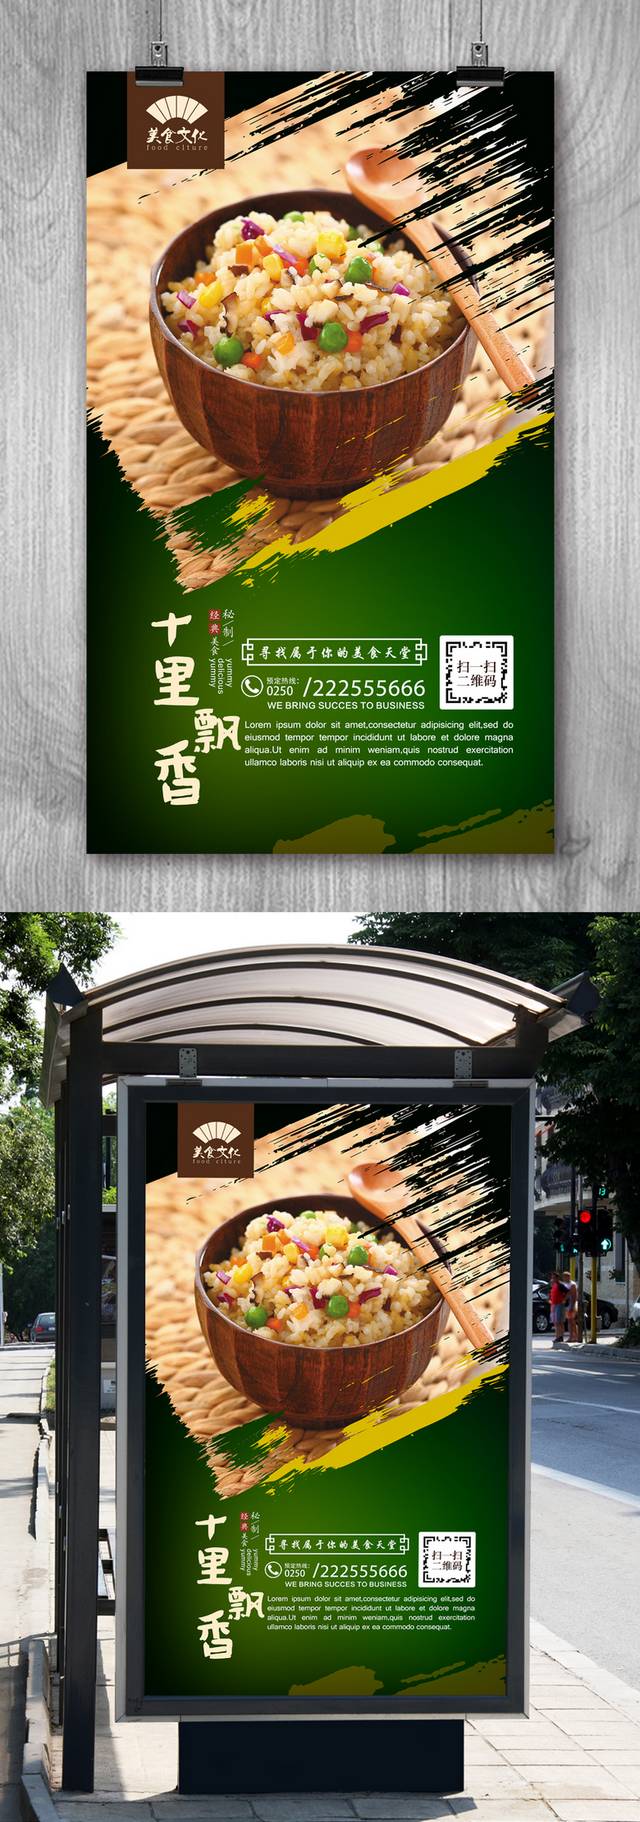 经典日本炒饭宣传海报设计